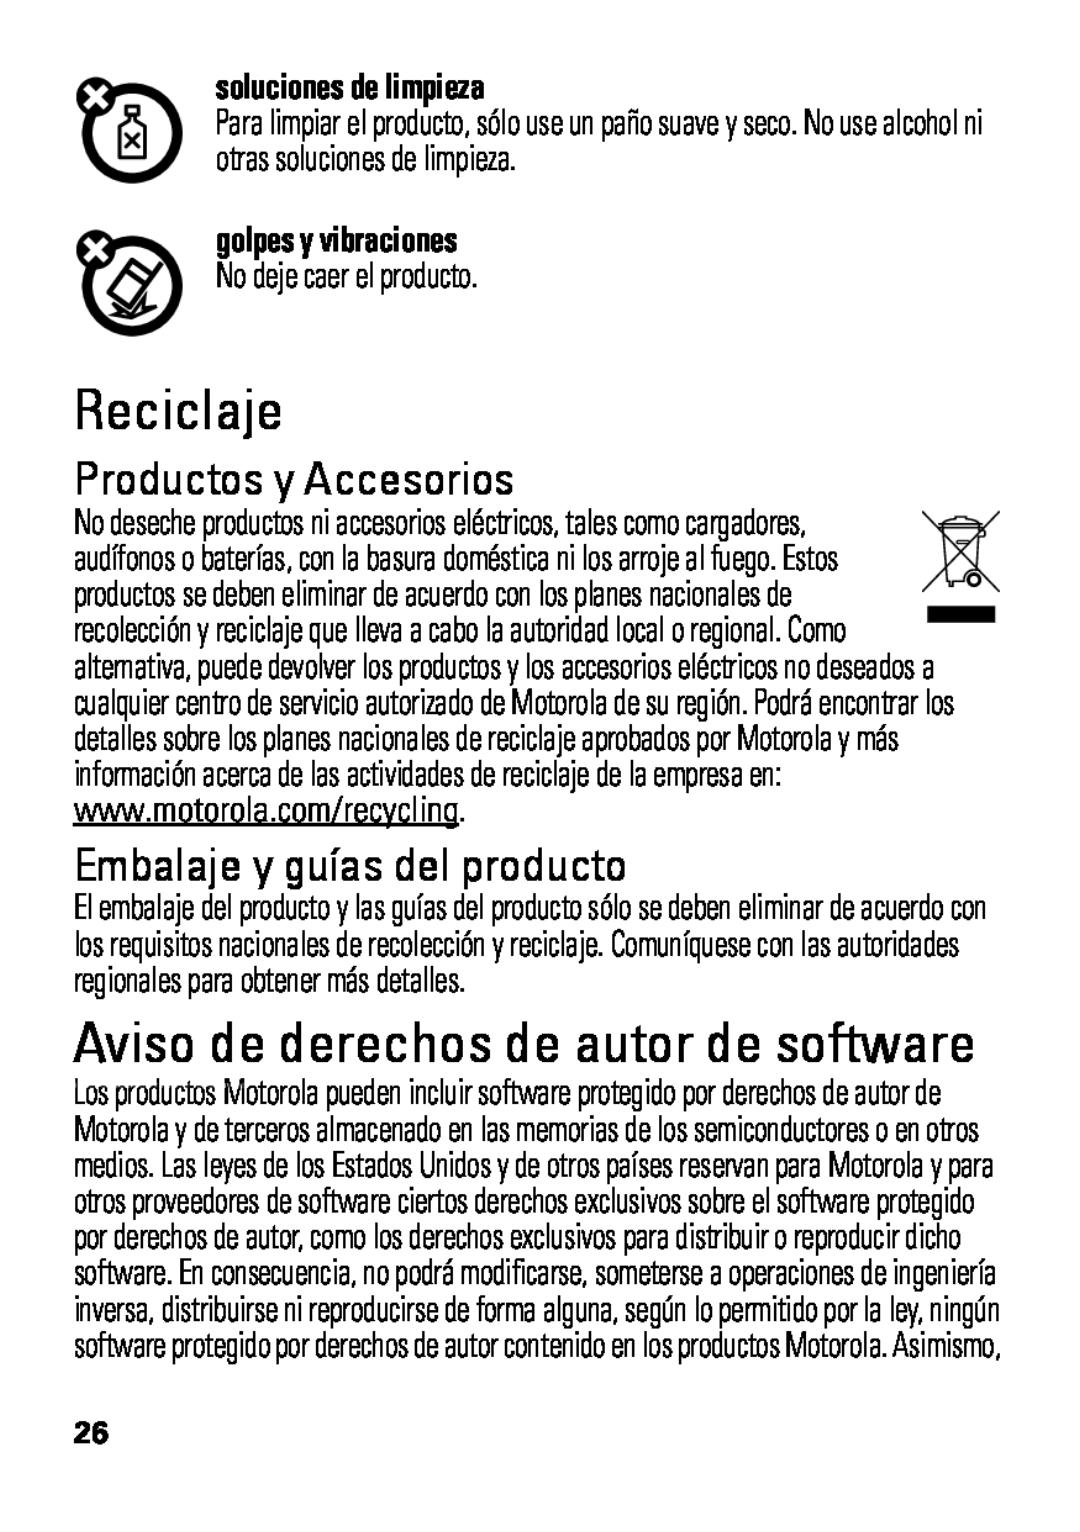 Motorola HX550 Reciclaje, Aviso de derechos de autor de software, Productos y Accesorios, Embalaje y guías del producto 